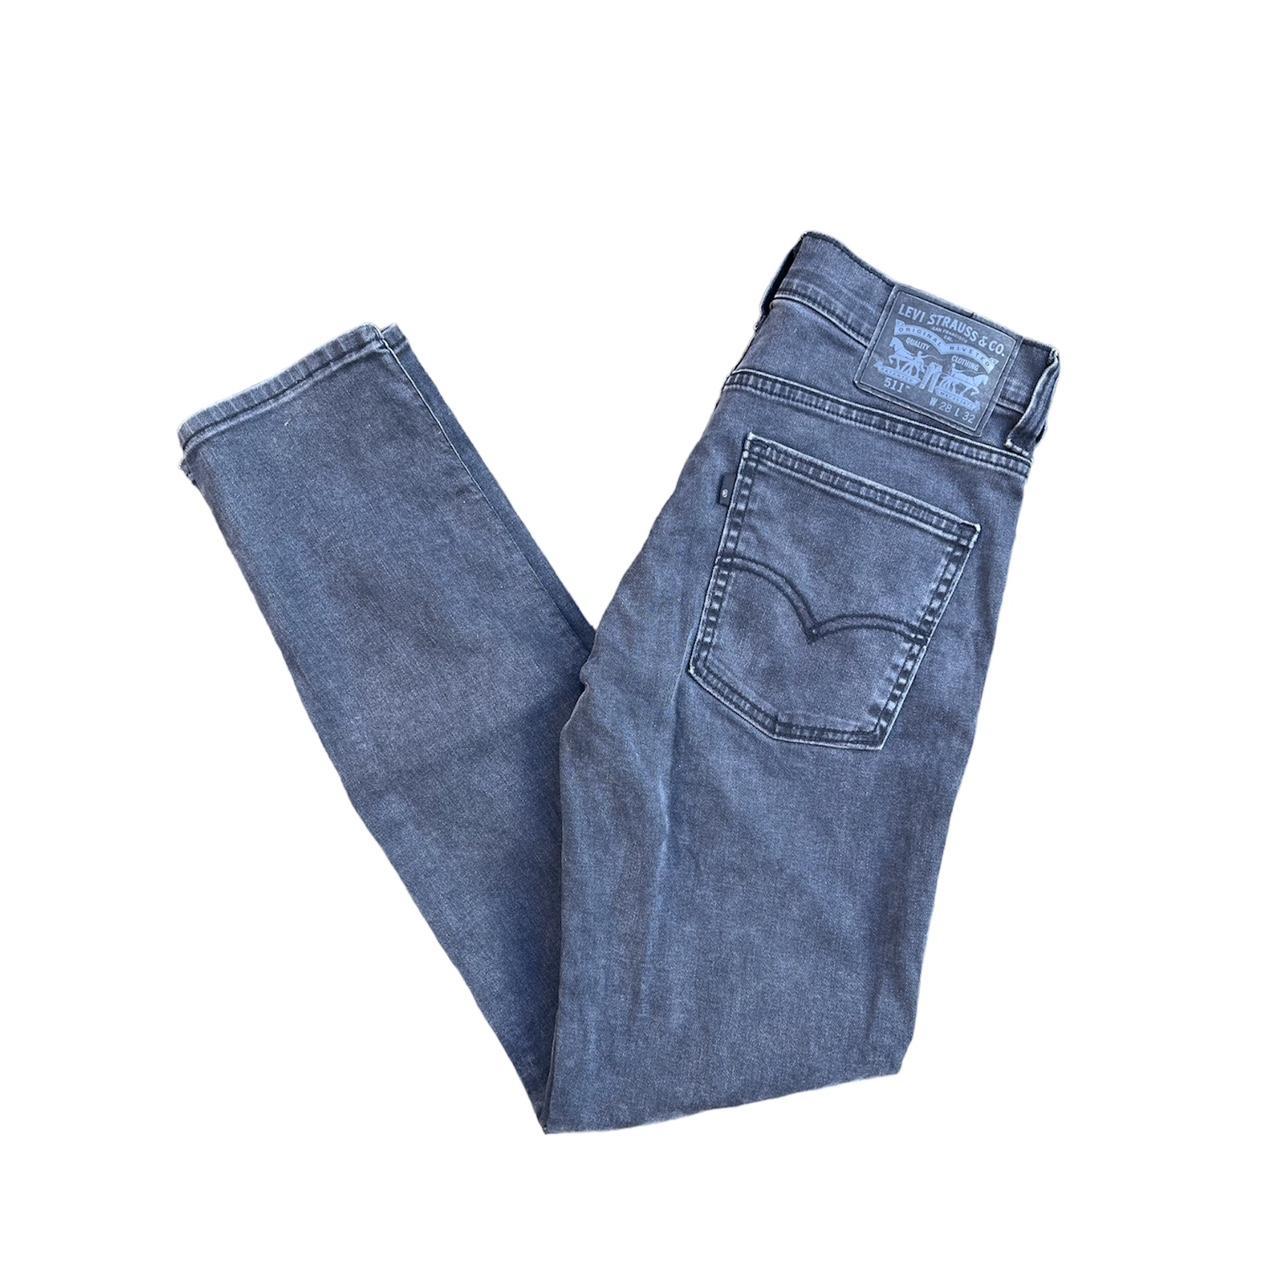 Levi’s 511 Black Denim Jeans - W28 L32 - Depop